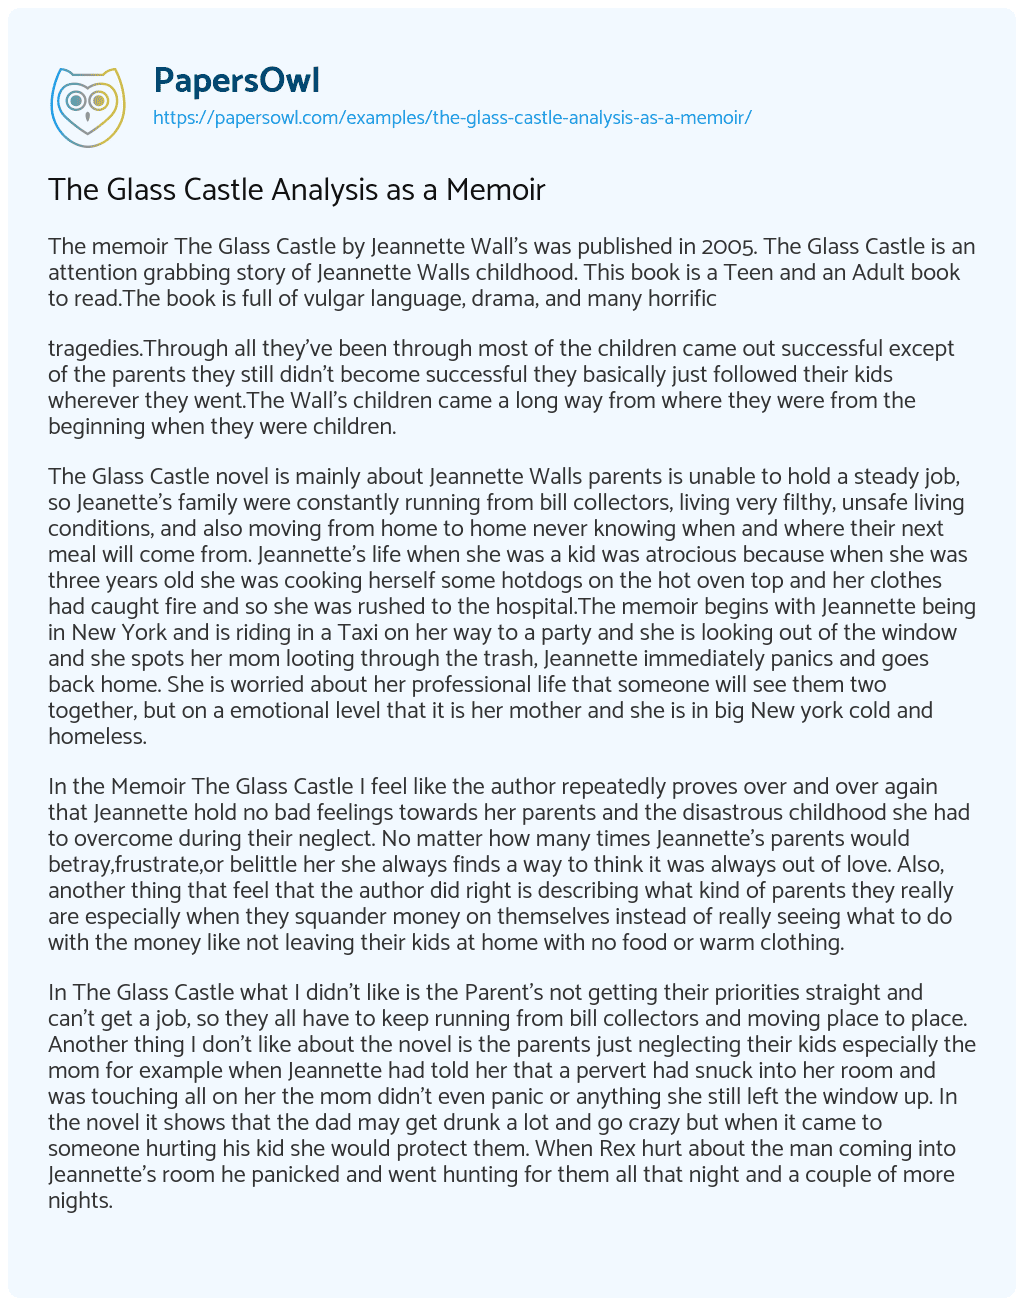 Essay on The Glass Castle Analysis as a Memoir